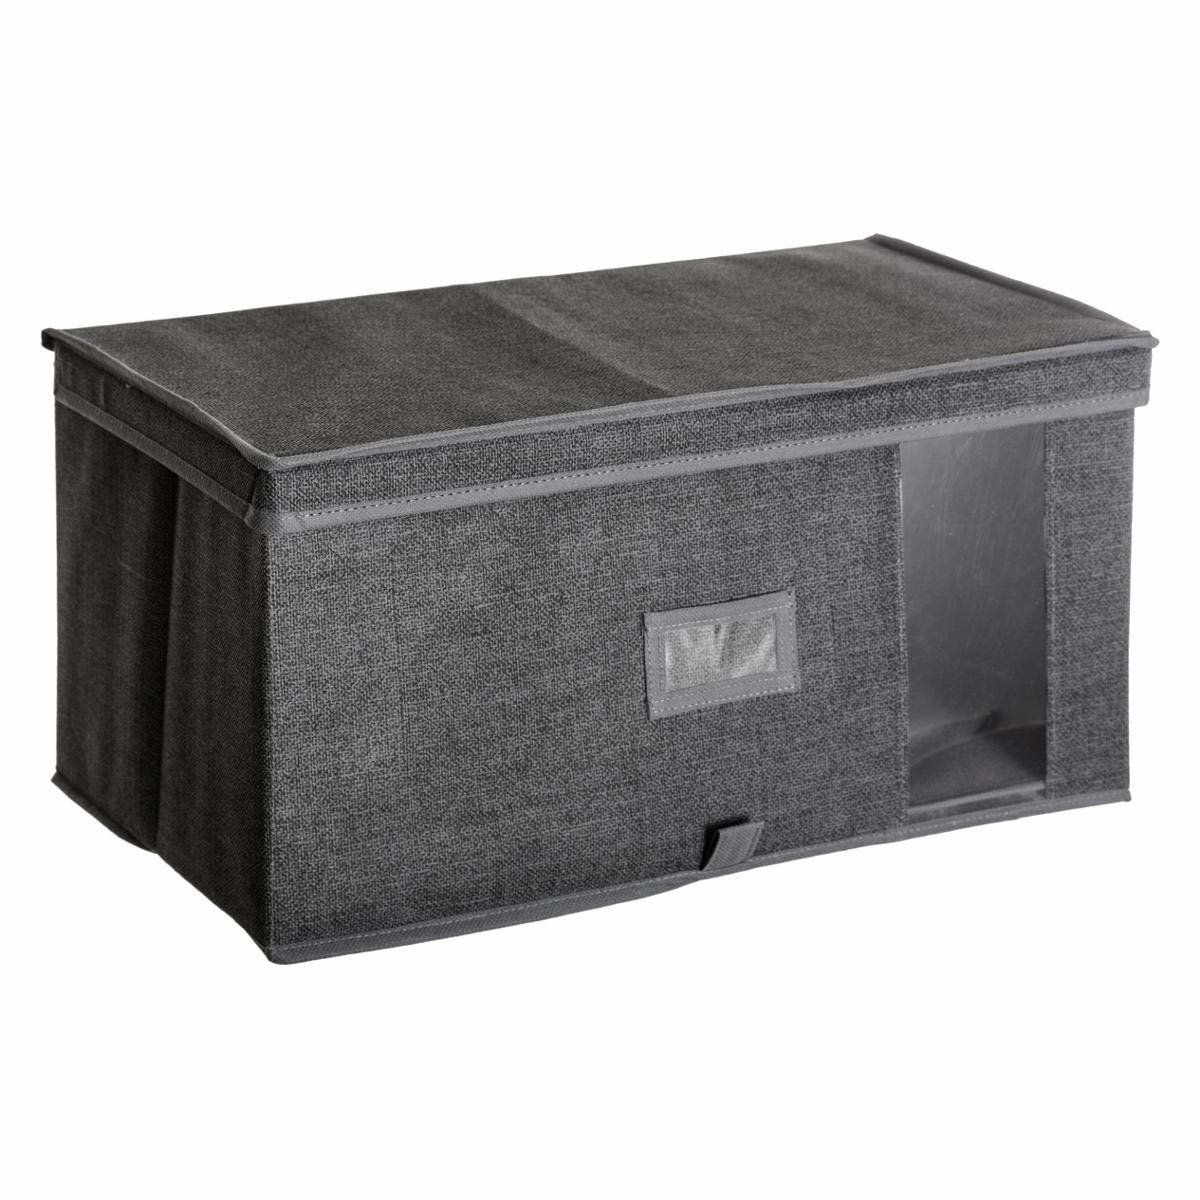 5five Simply Smart Úložný box, textilní úložný box, 50x30x25cm, tmavě šedý - EMAKO.CZ s.r.o.